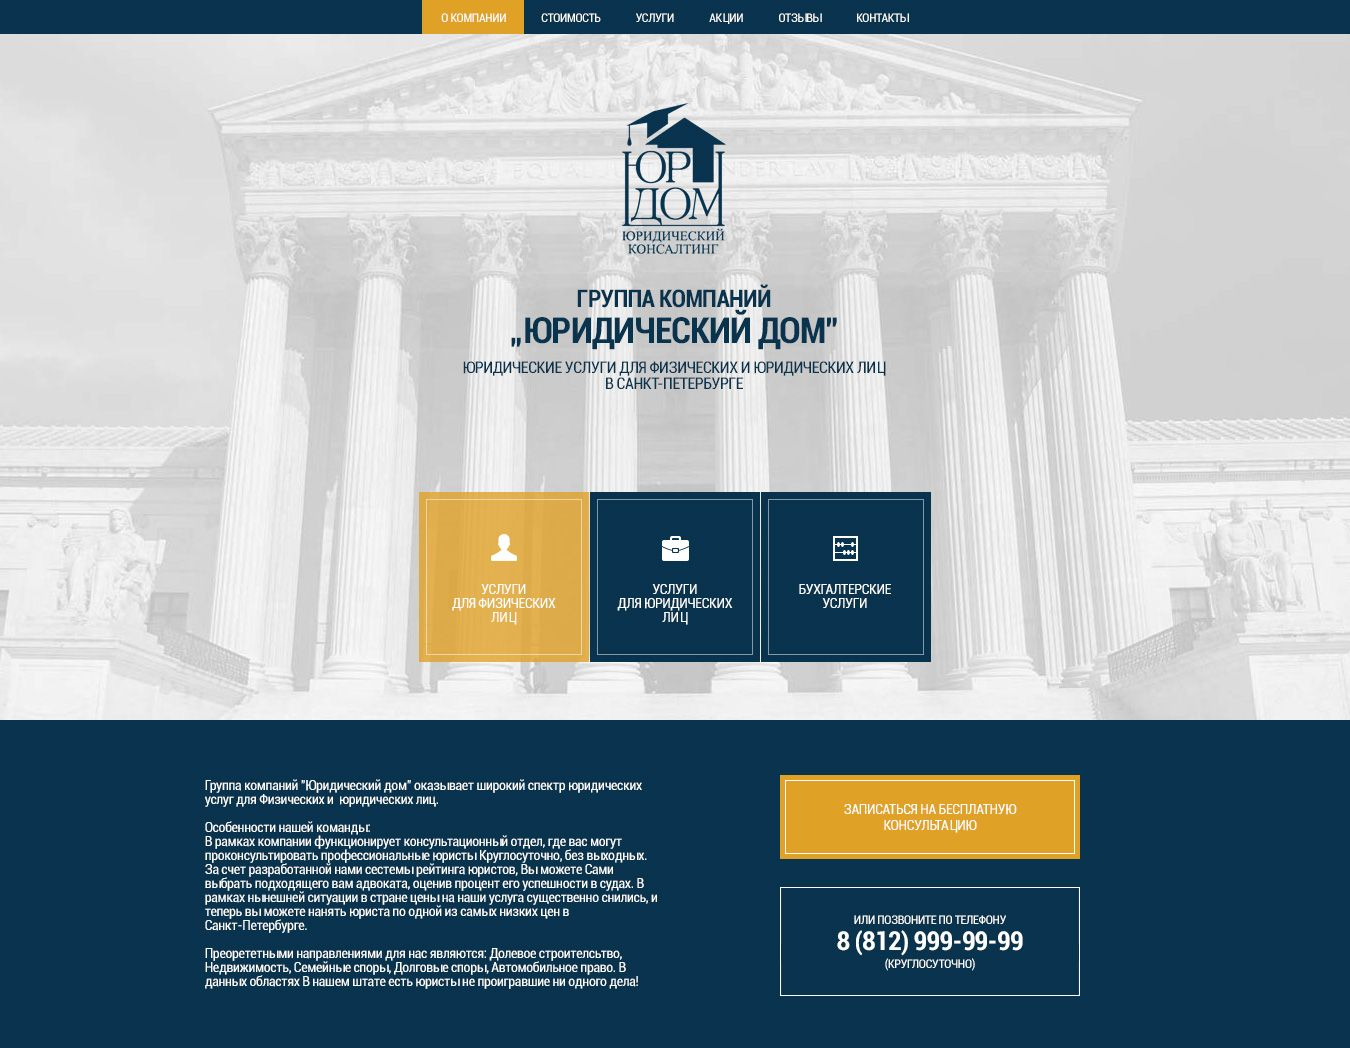 web dizains piemērs industrija jurisprudence juridiskie pakalpojumi